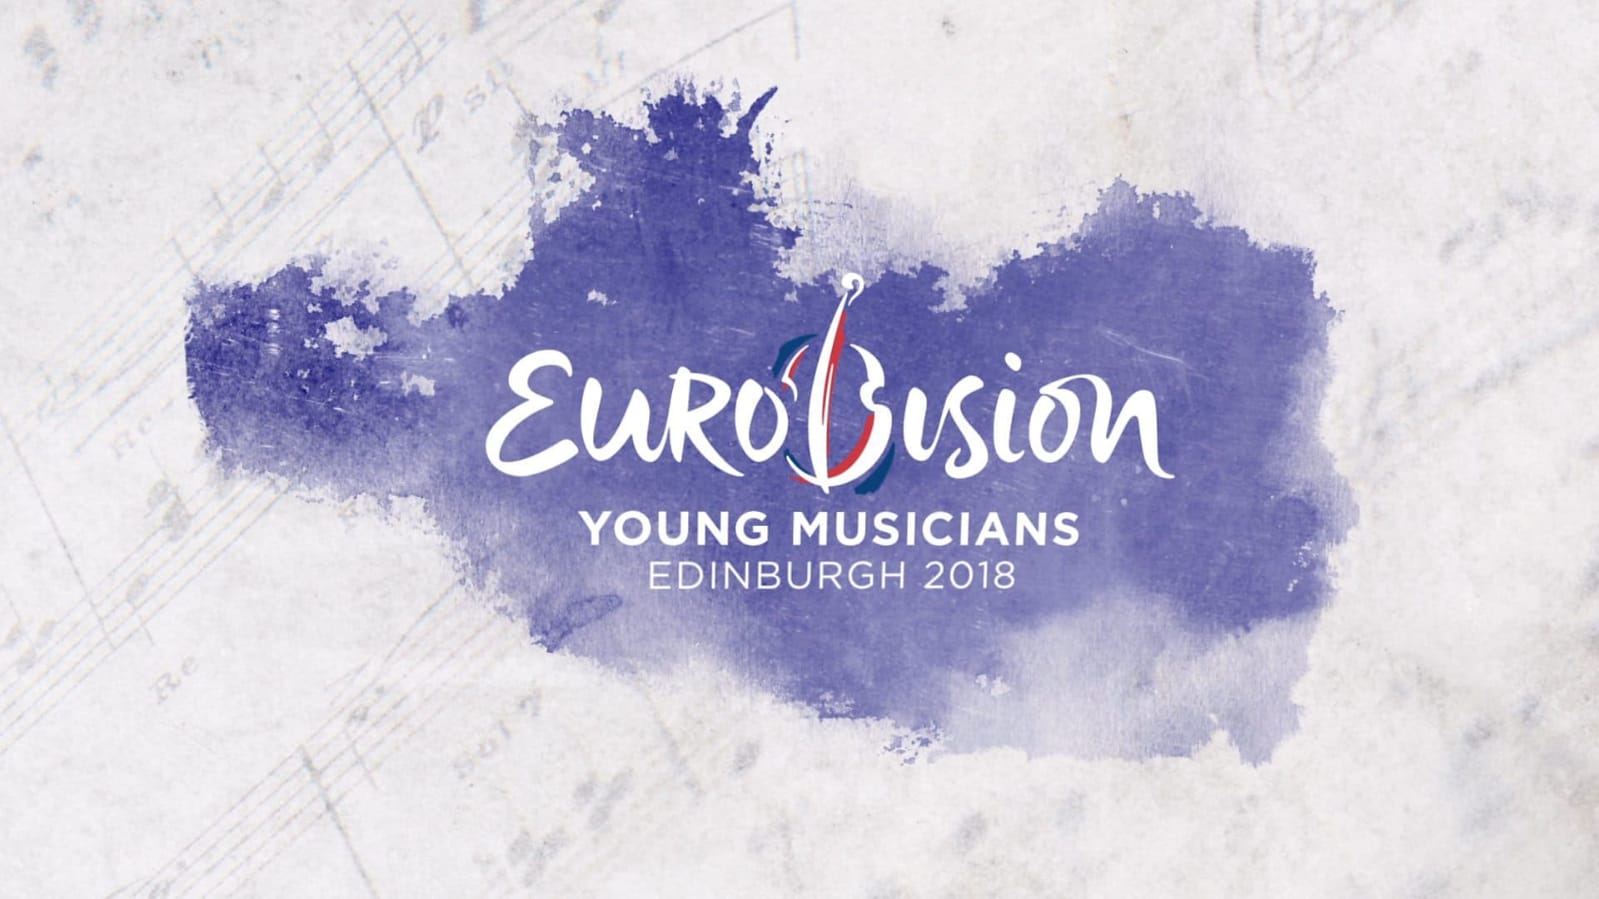 Exclusiva: La 2 de TVE emitirá la Gran Final de Eurovisión de Jóvenes Músicos 2018 el próximo 1 de septiembre